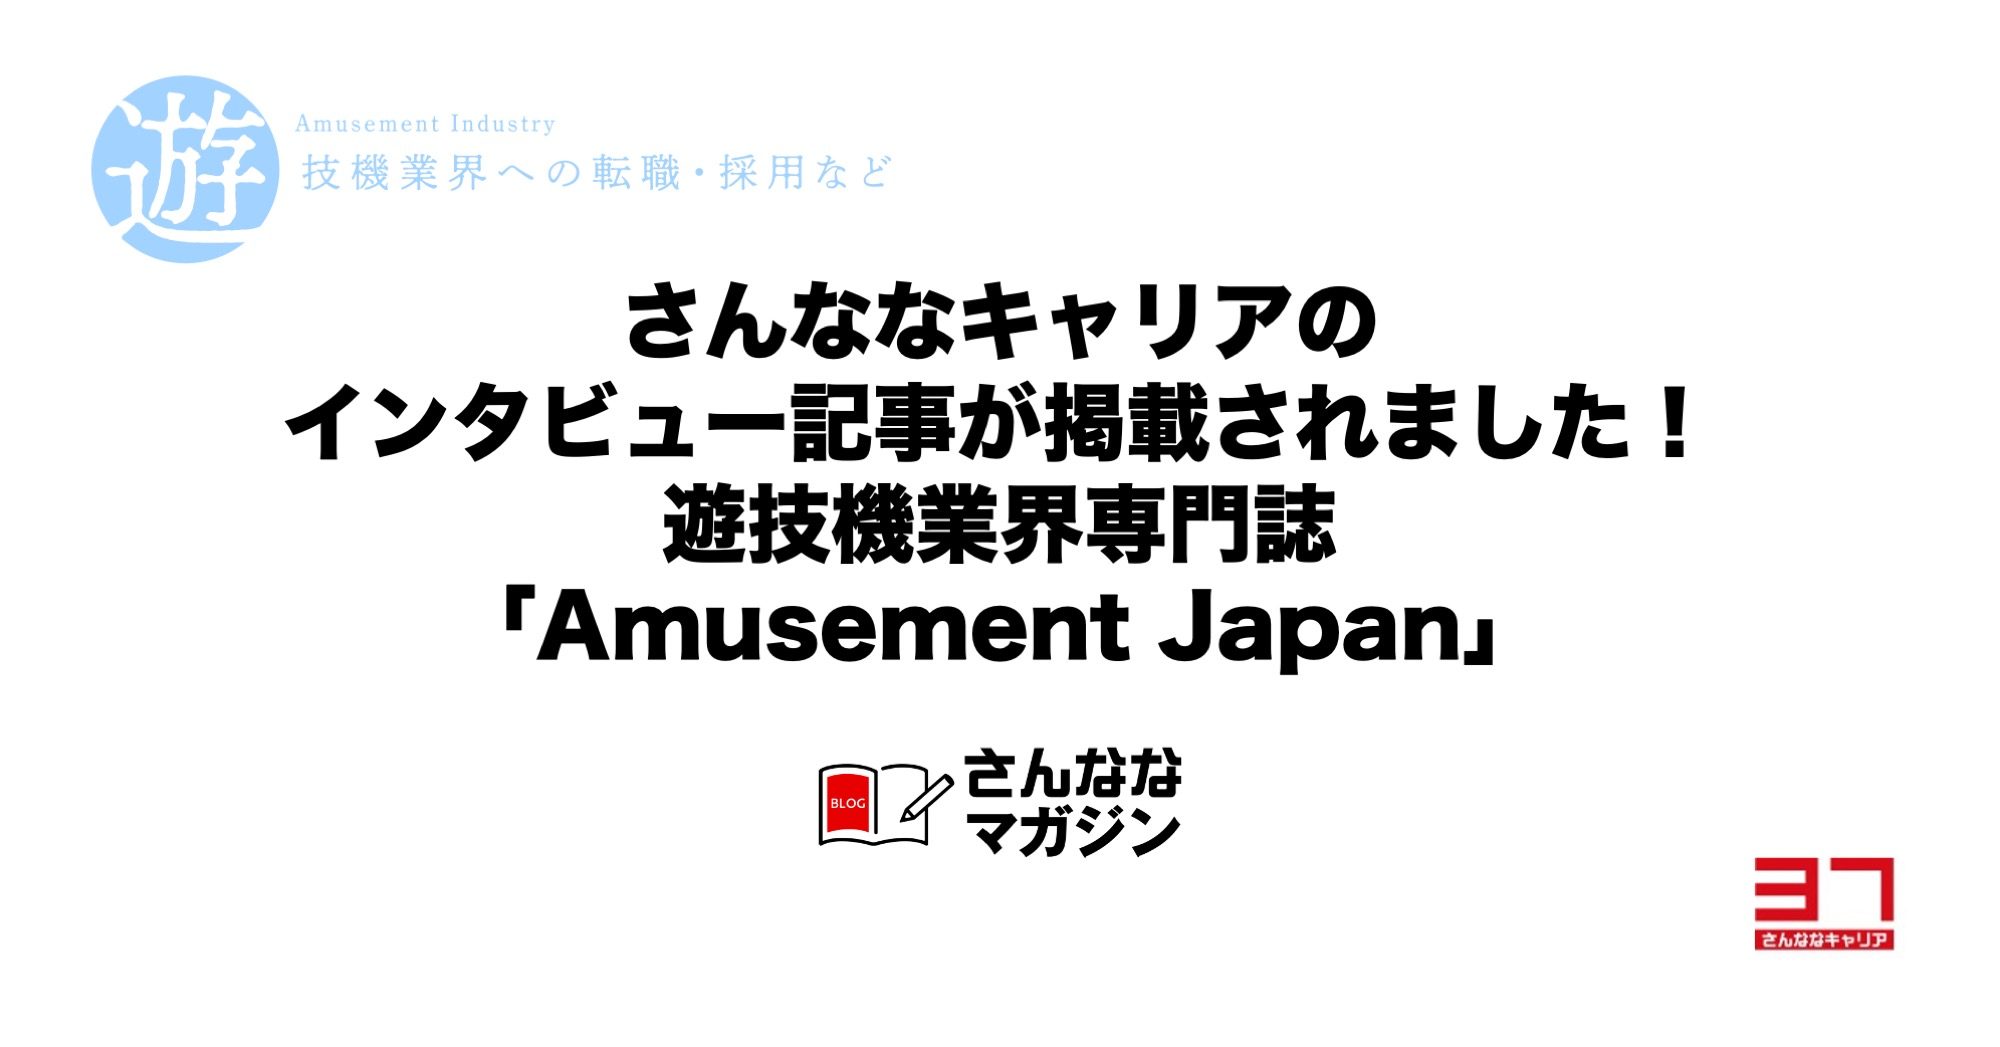 さんななキャリアのインタビュー記事が掲載されました！遊技機業界専門誌「Amusement Japan」